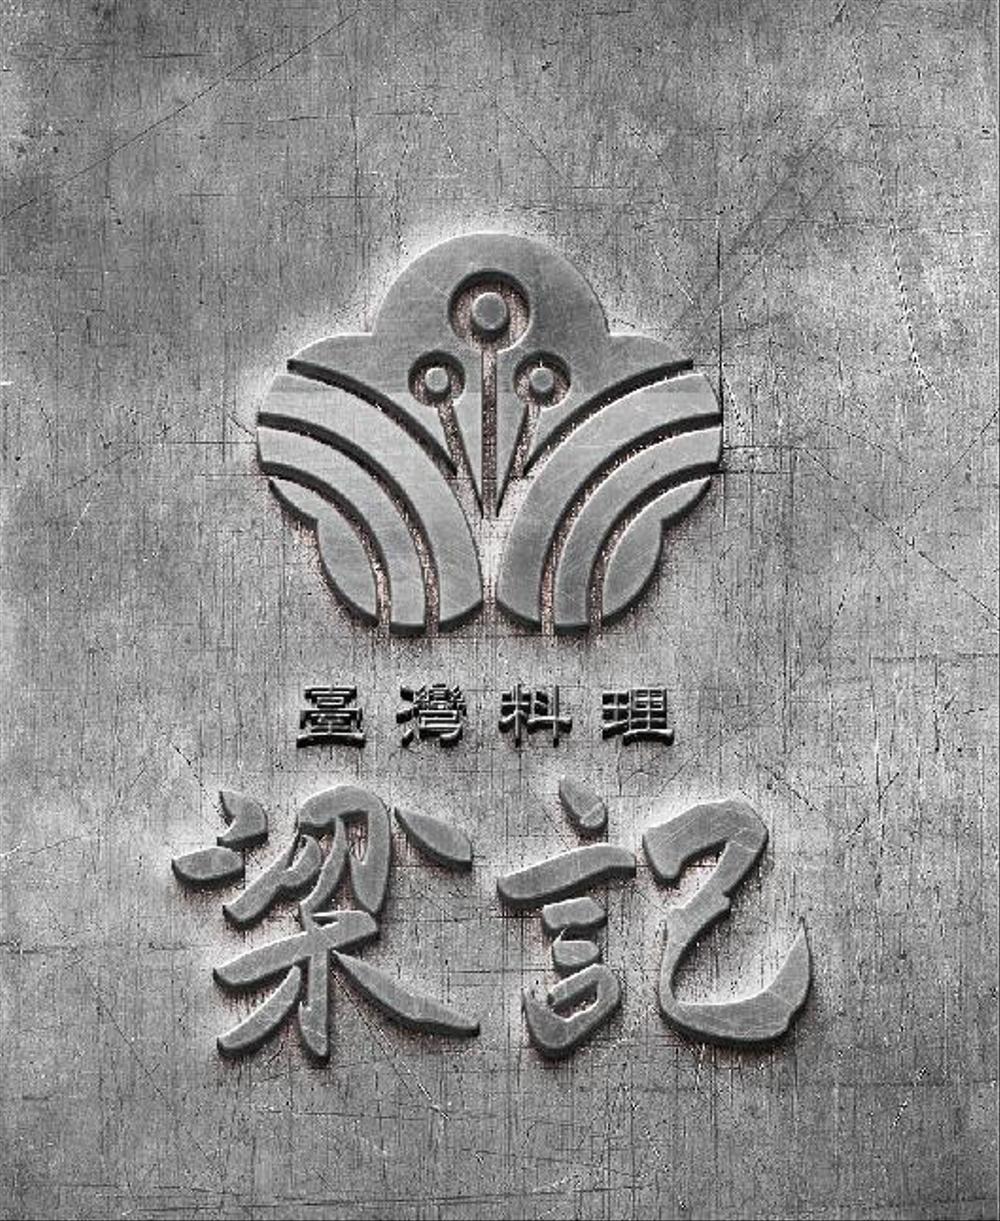 臺灣料理「梁記」のロゴ